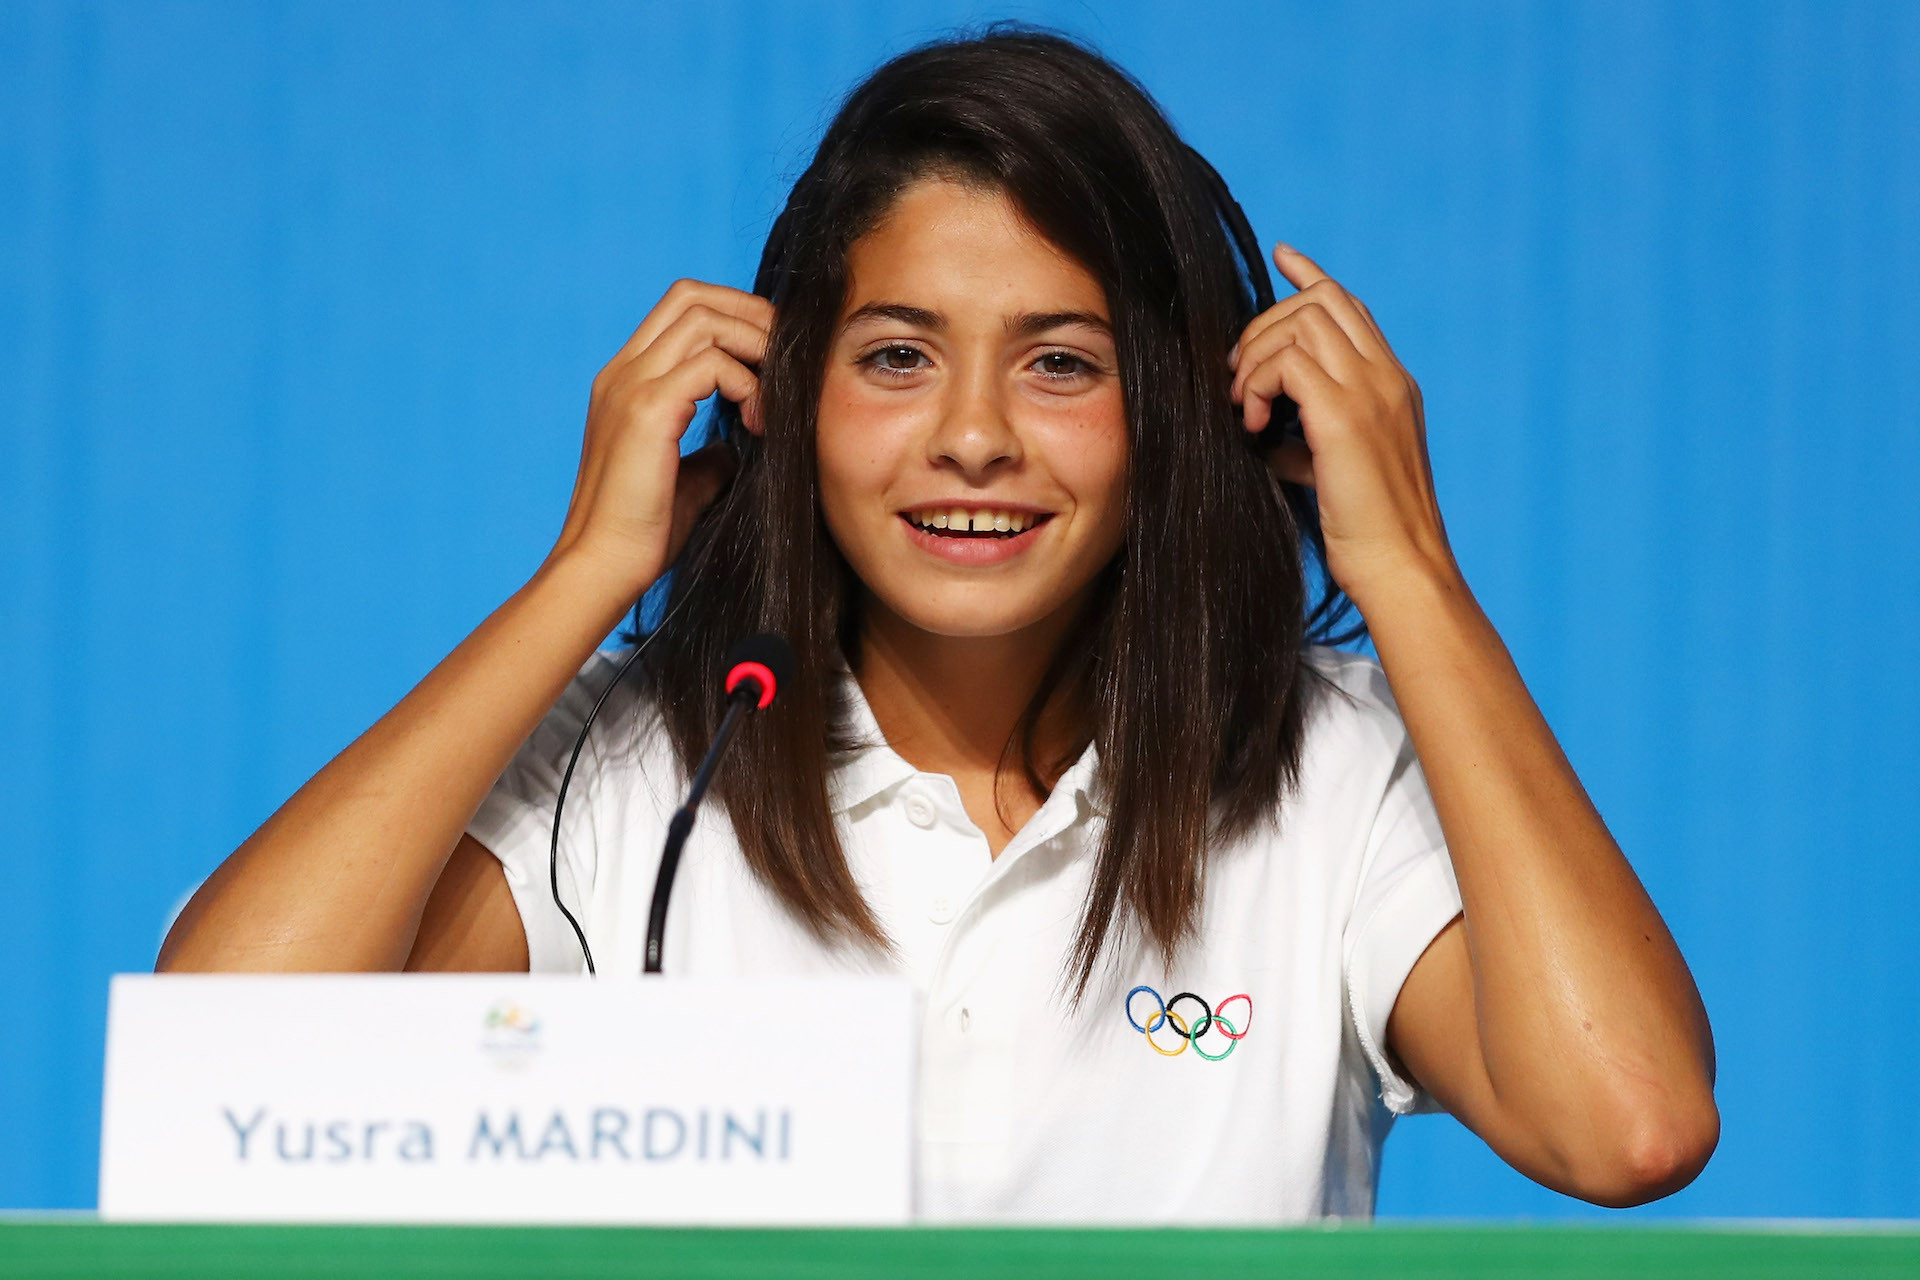 Yusra Mardini at a press conference in Rio 2016. GETTY IMAGES